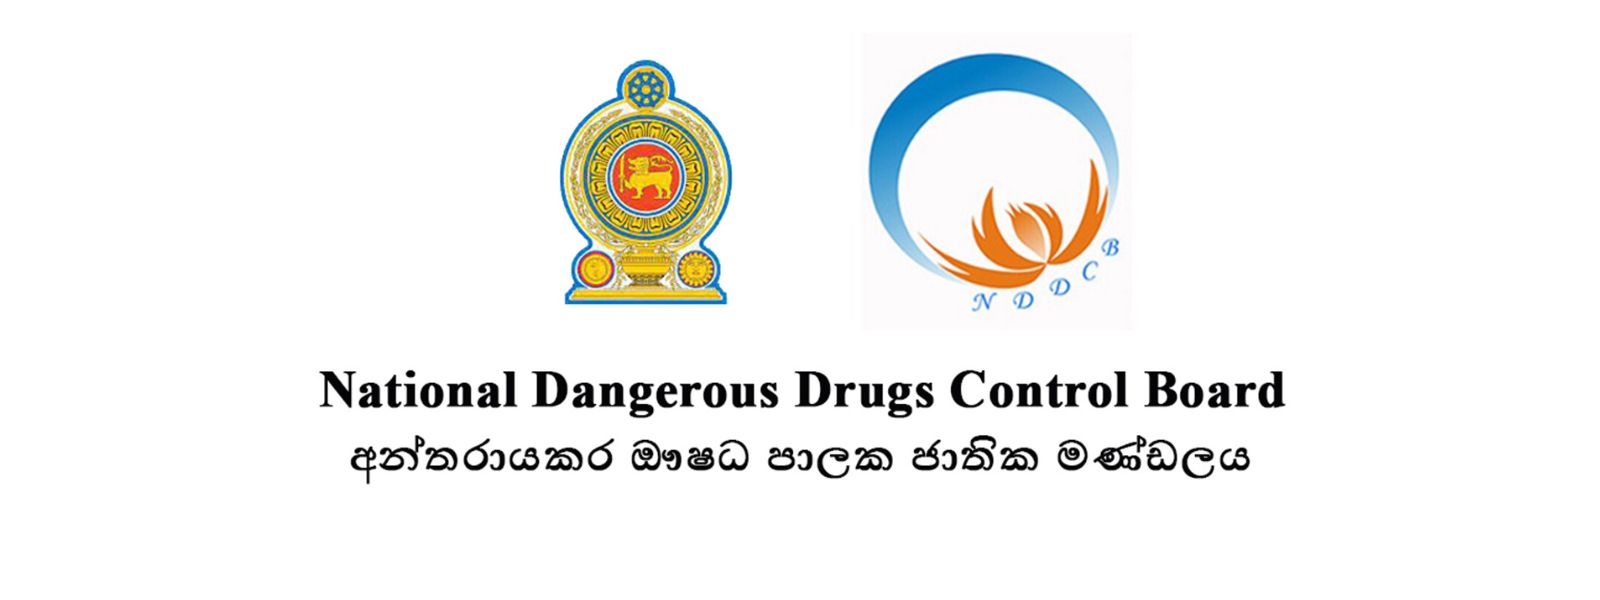 230 drug rehabilitation centers established